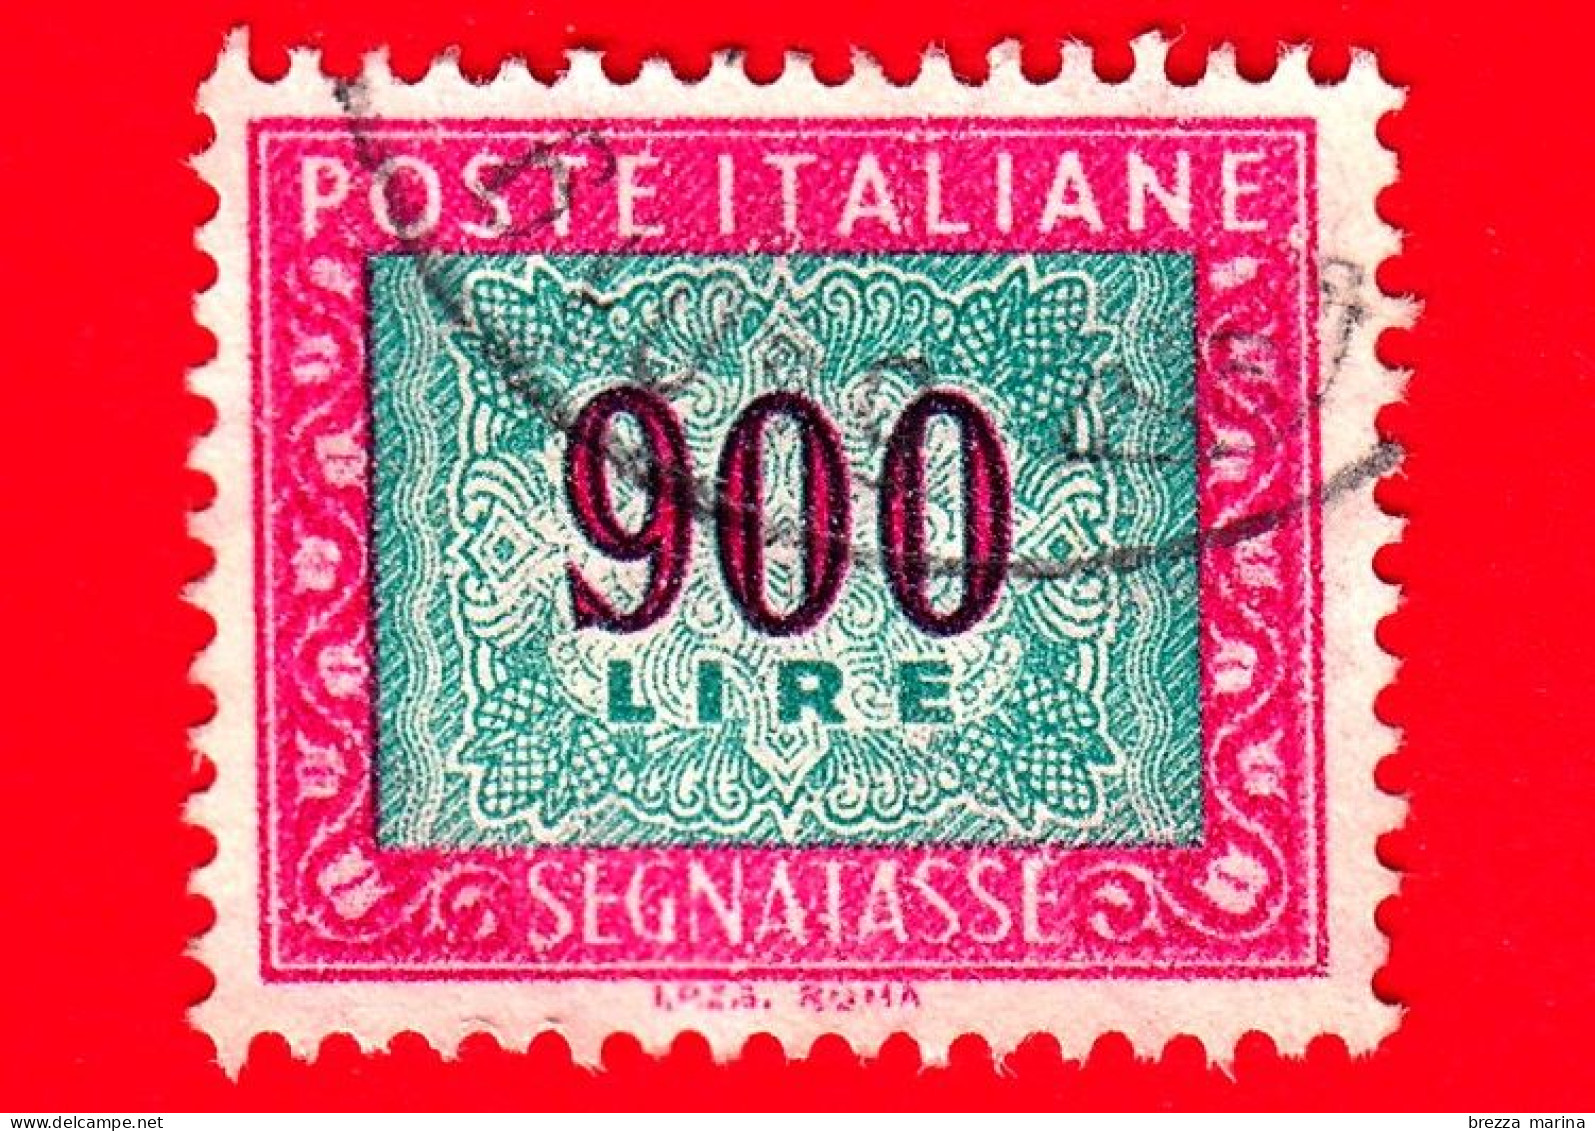 ITALIA - Usato - 1984 - Segnatasse - Cifra E Decorazioni, Filigrana Stelle, Dicitura I.P.Z.S. ROMA  - 900 L. - Taxe